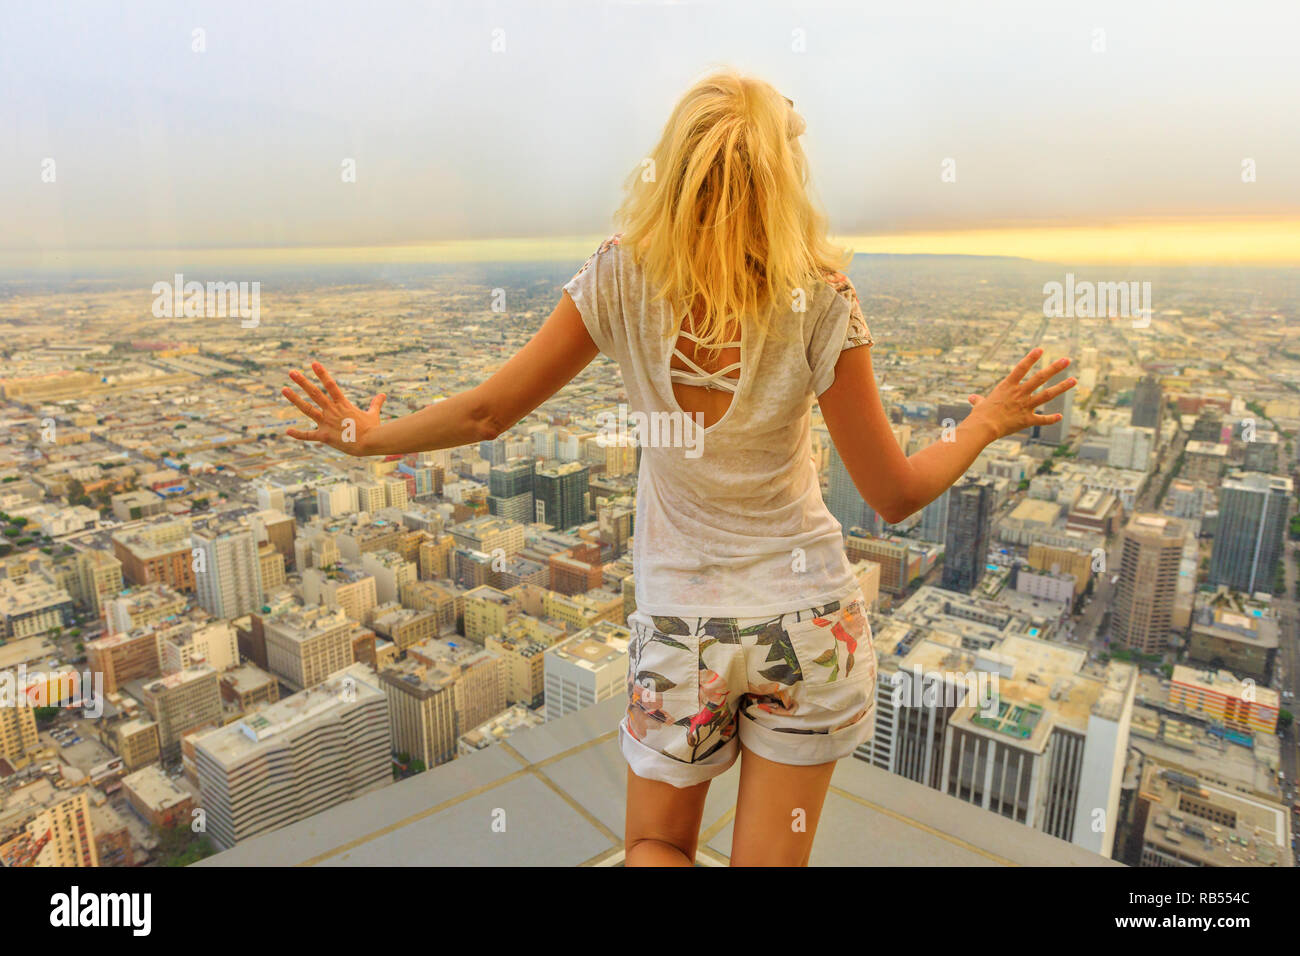 Vista aerea di Los Angeles skyline in California, Stati Uniti. Viaggi e turismo concetto americano. Bionda donna turistica cercando presso il Centro Cittadino di LA cityscape dalla piattaforma di osservazione. Sunset shot. Foto Stock